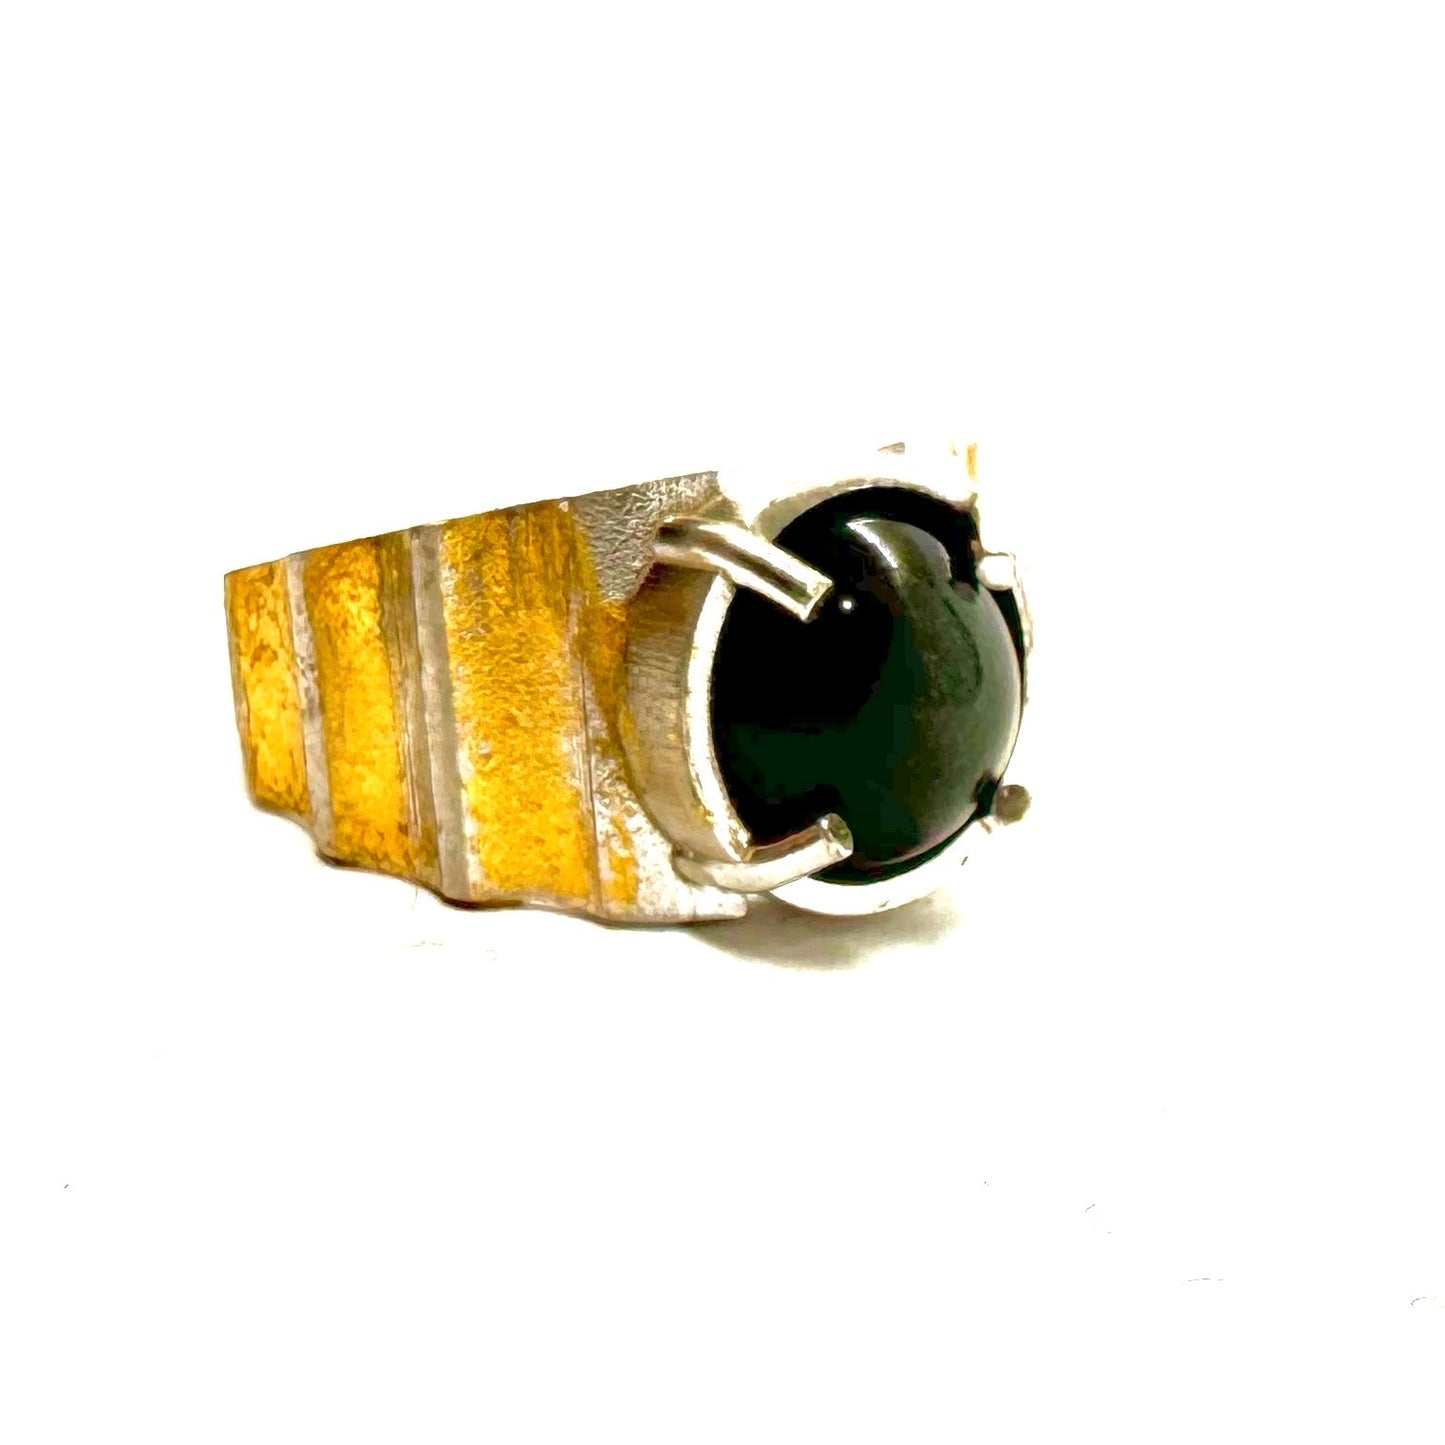 Brutalist Ring with Black Star Diopside 23kt Gold Leaf in Sterling Silver